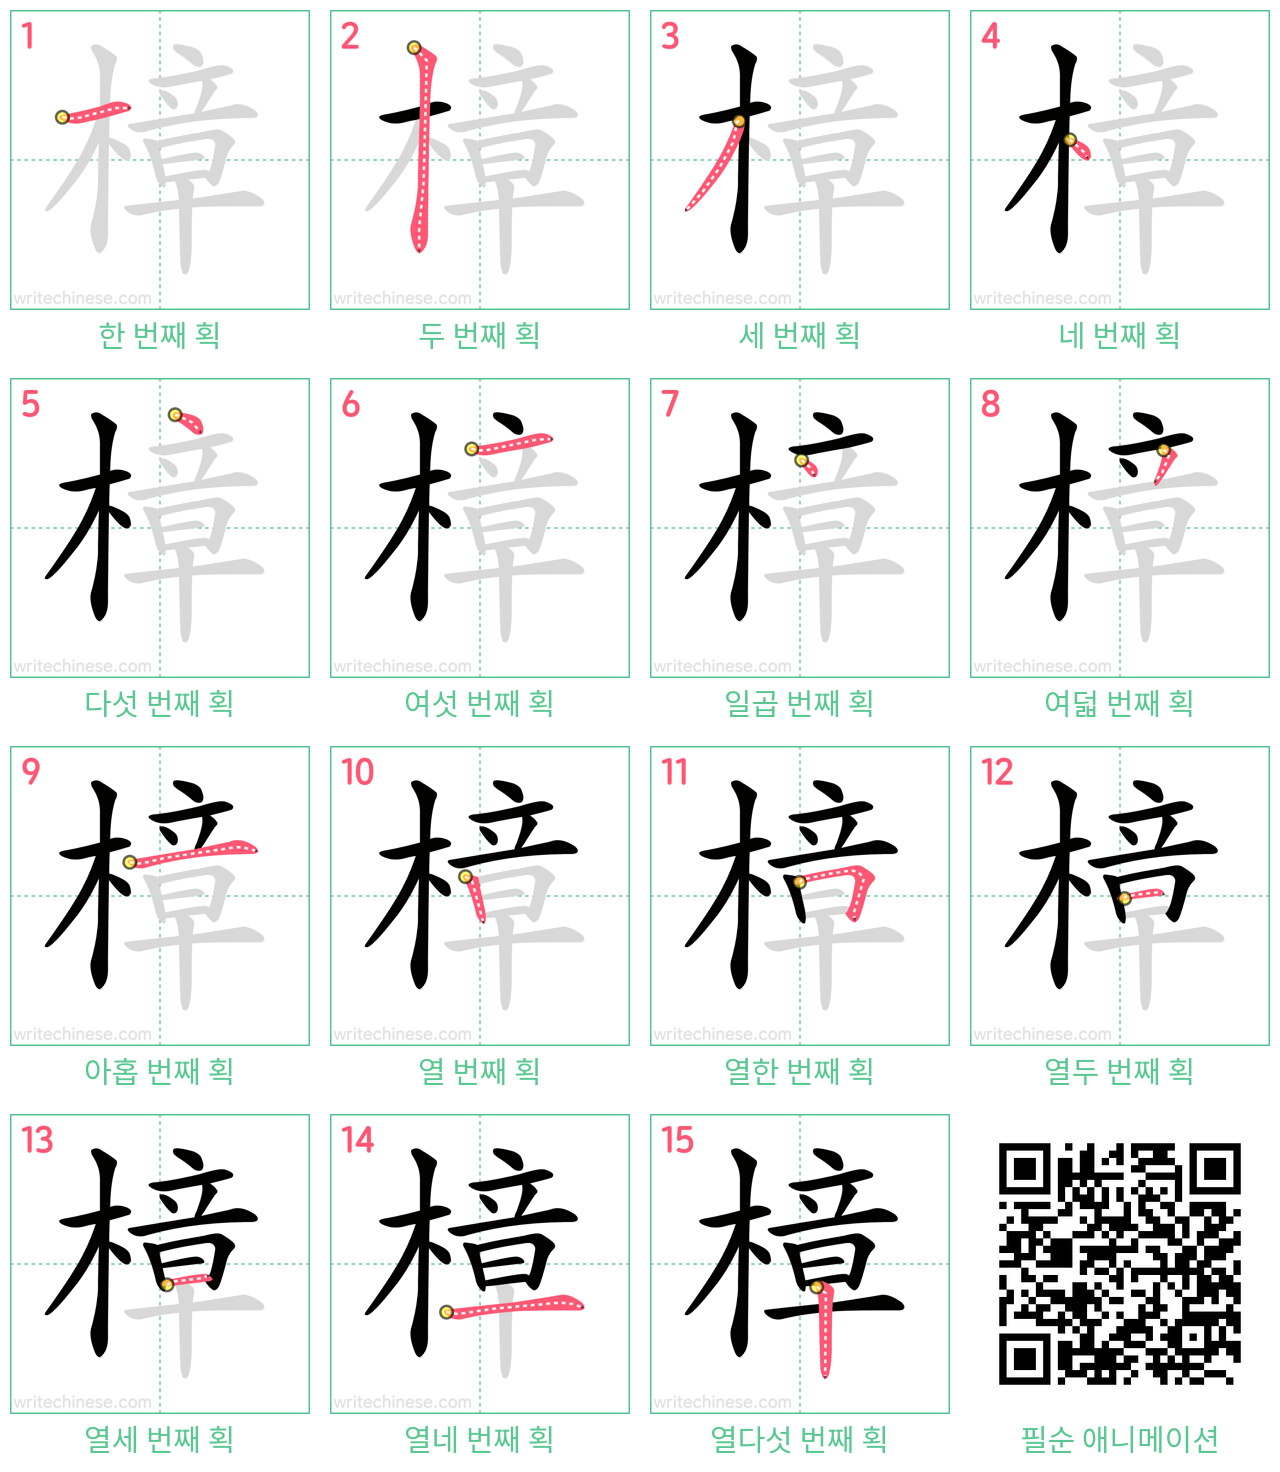 樟 step-by-step stroke order diagrams